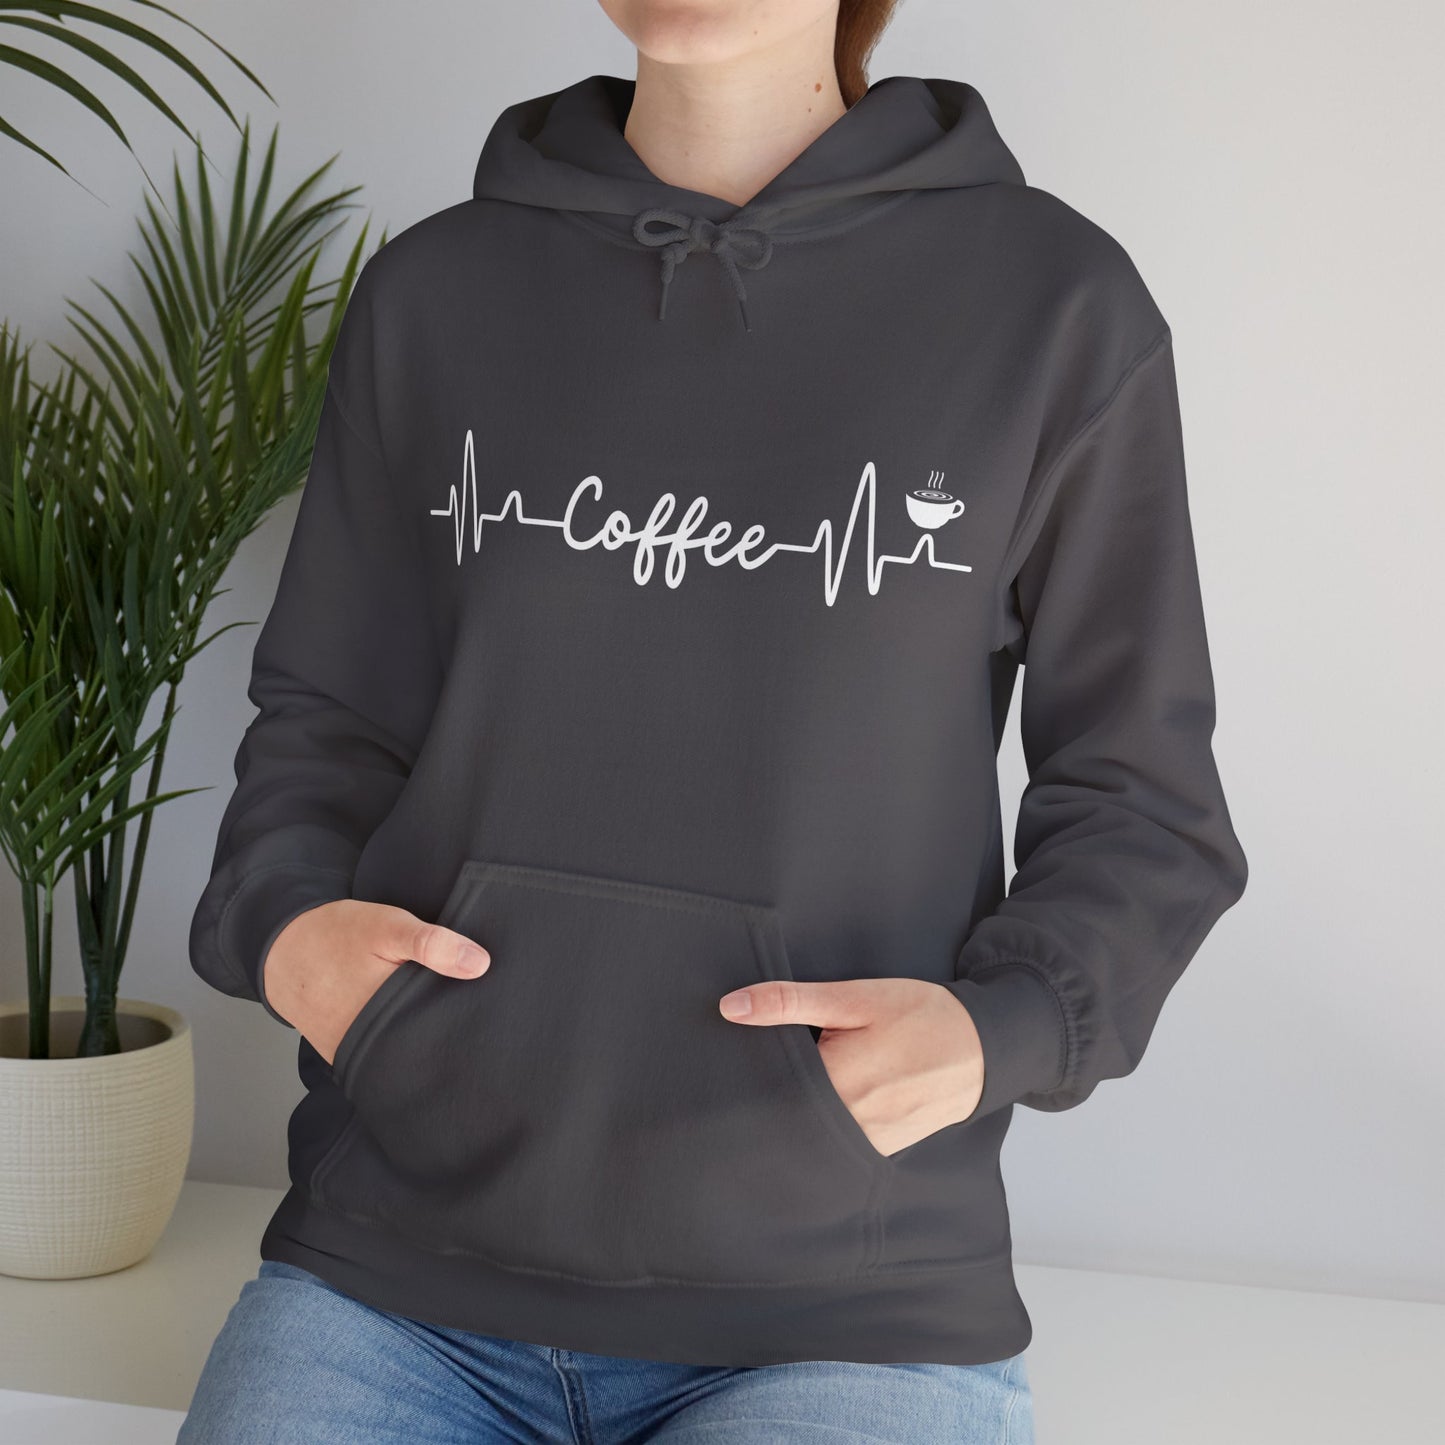 Heartbeat of Coffee - Hooded Sweatshirt S-5XL